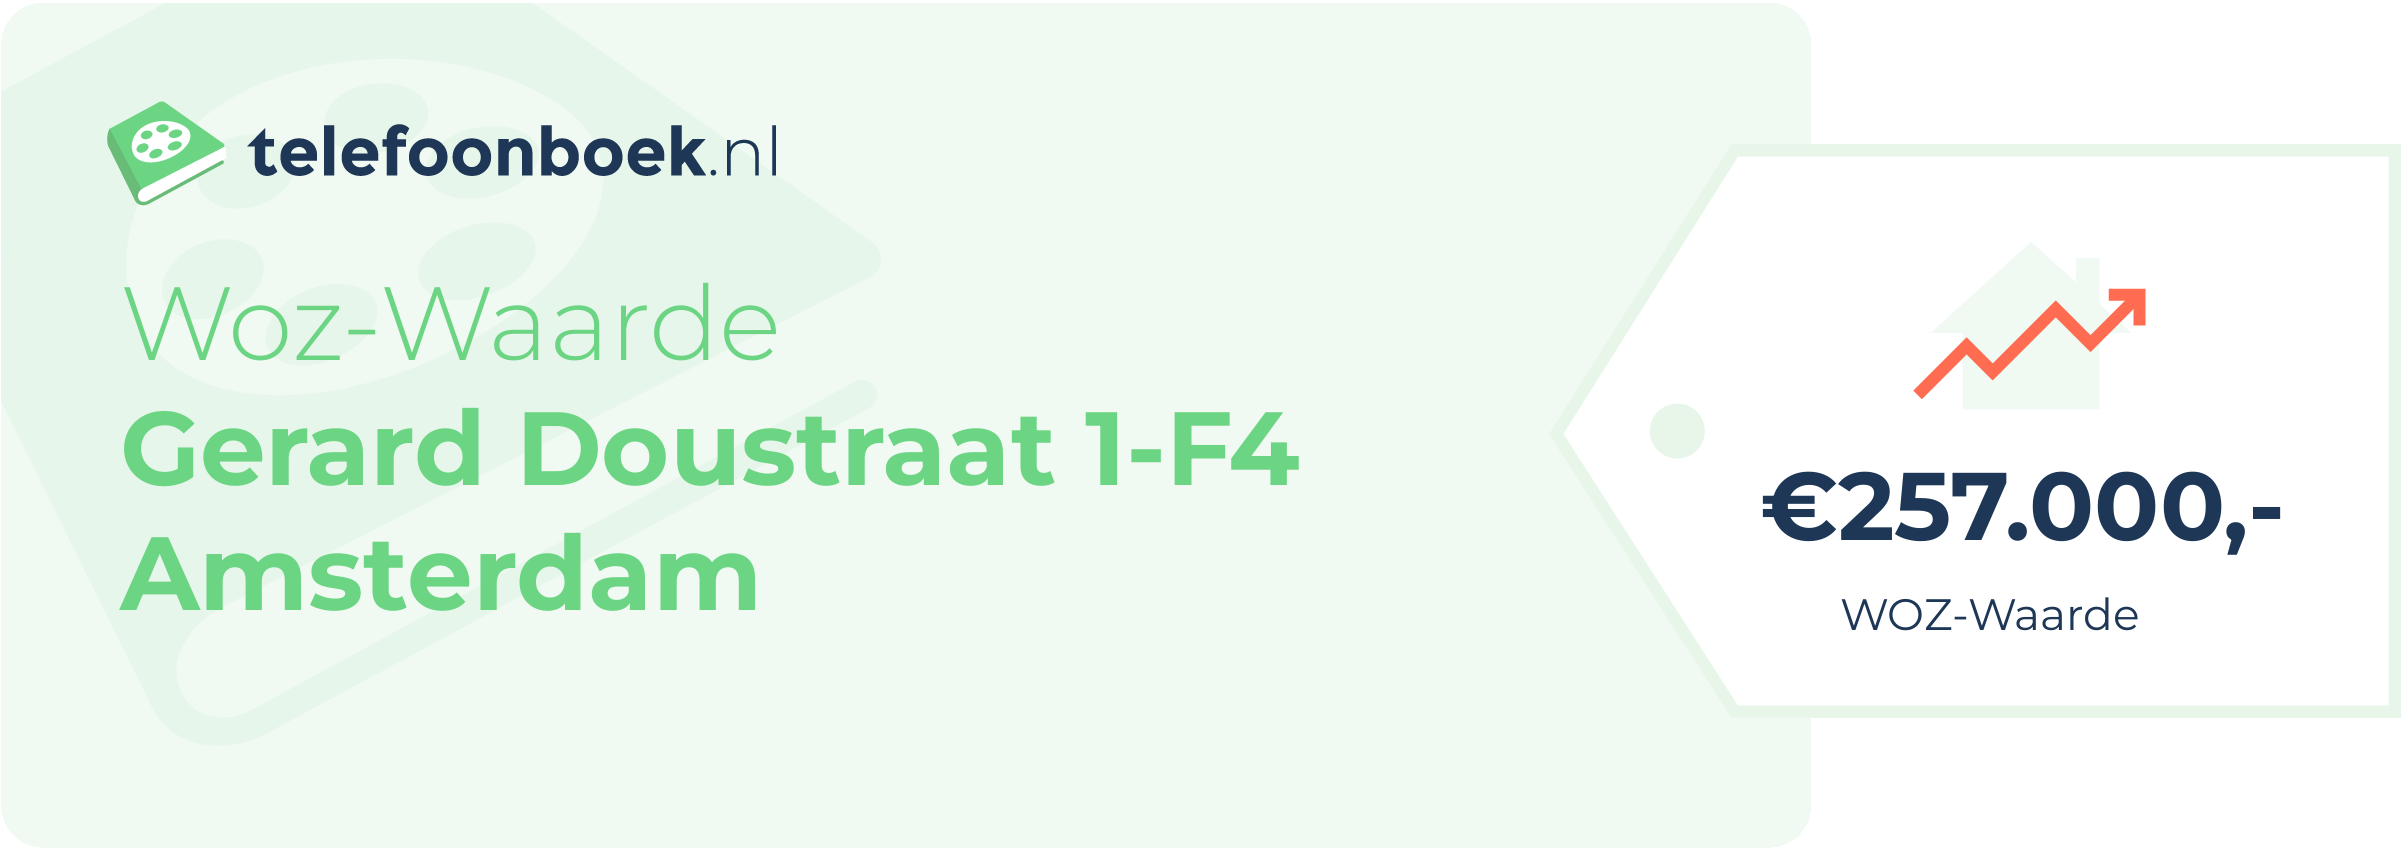 WOZ-waarde Gerard Doustraat 1-F4 Amsterdam